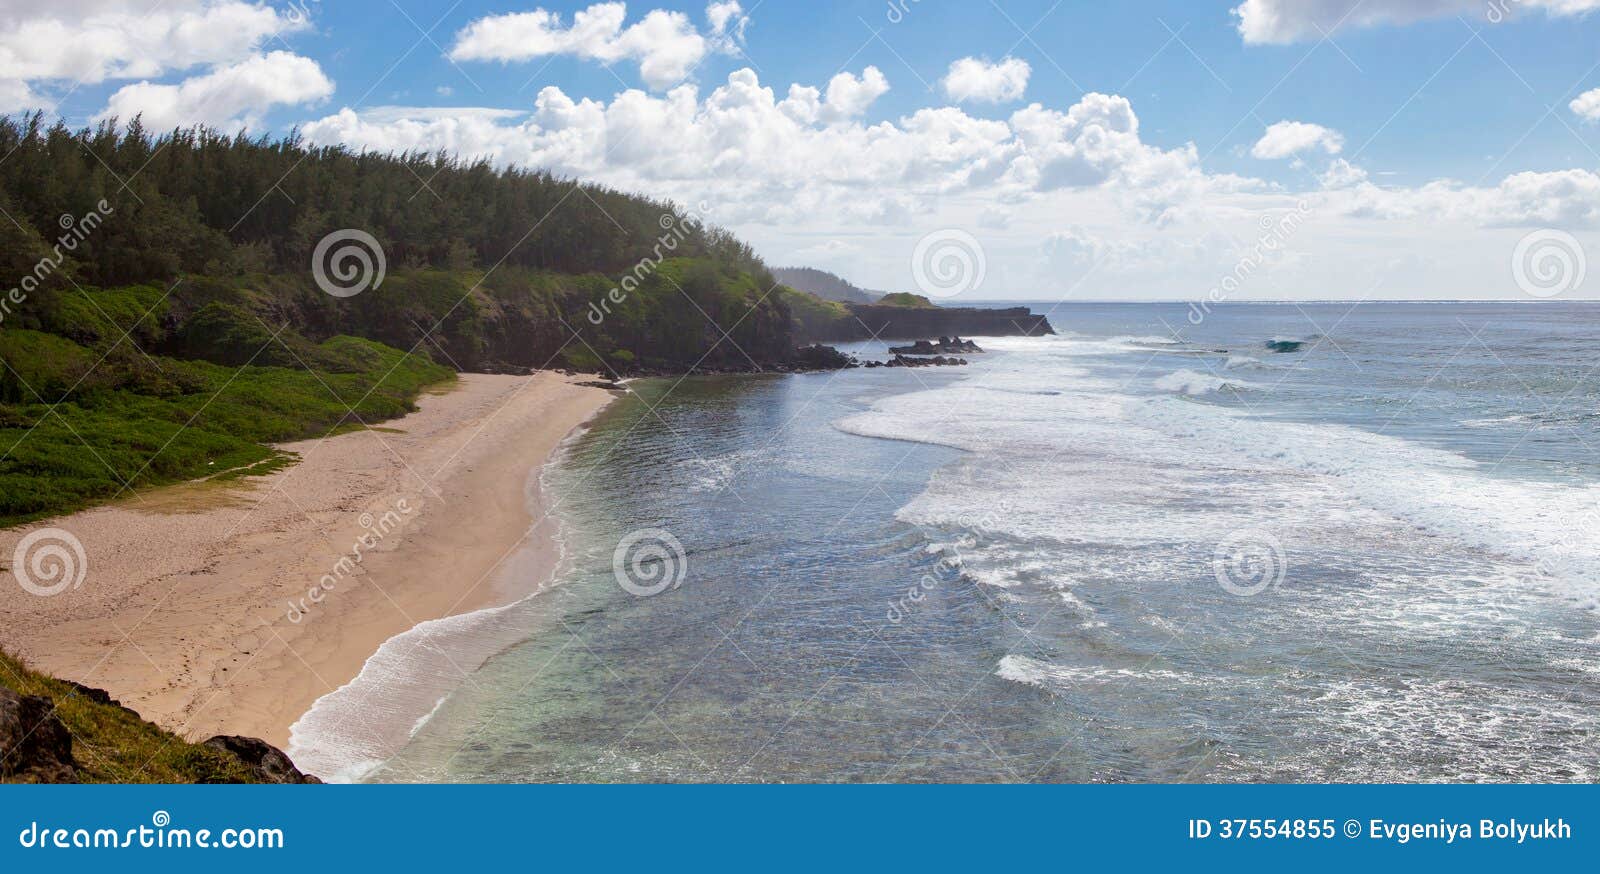 mauritius island ocean landscape